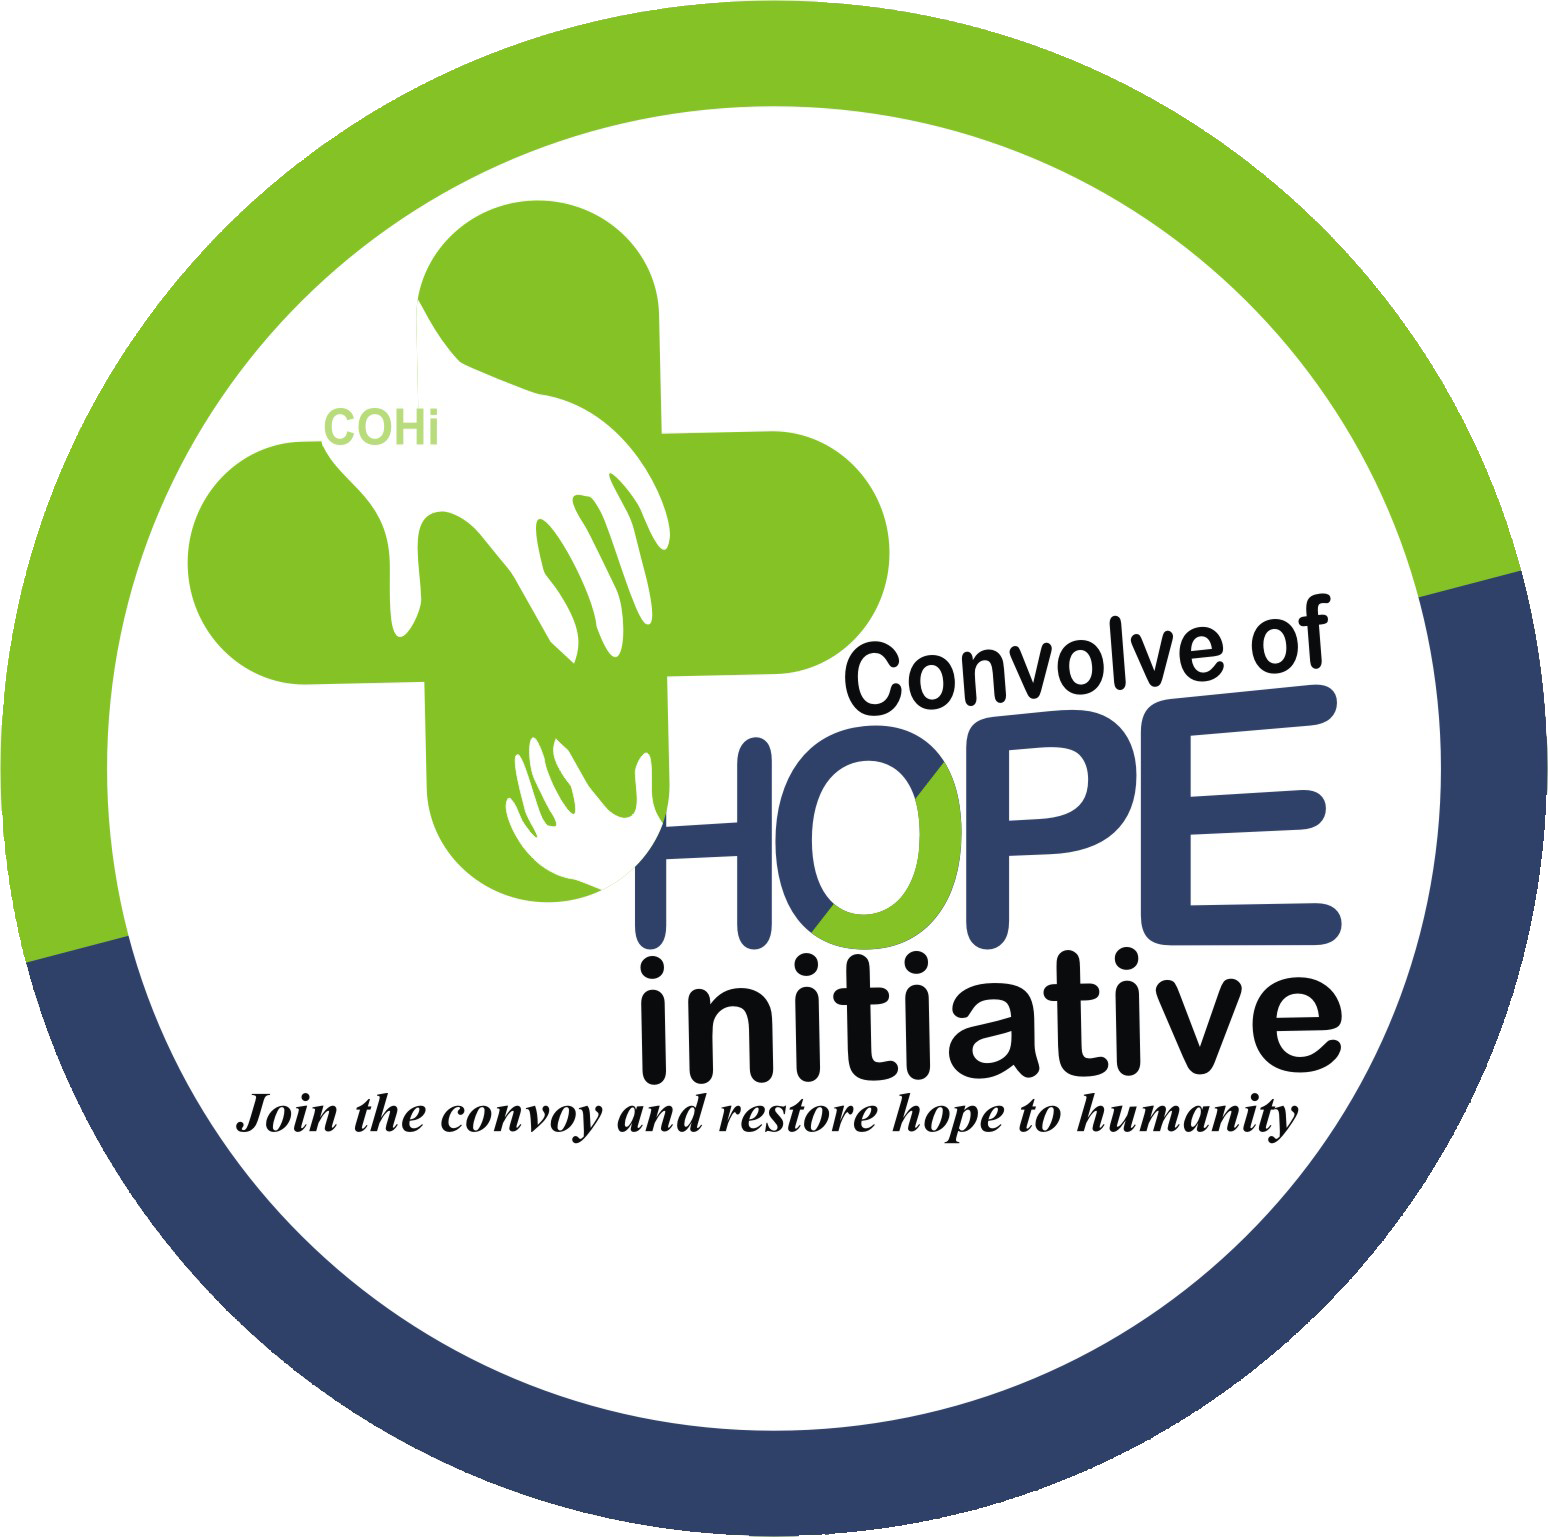 Convolve of Hope Initiative – COHi